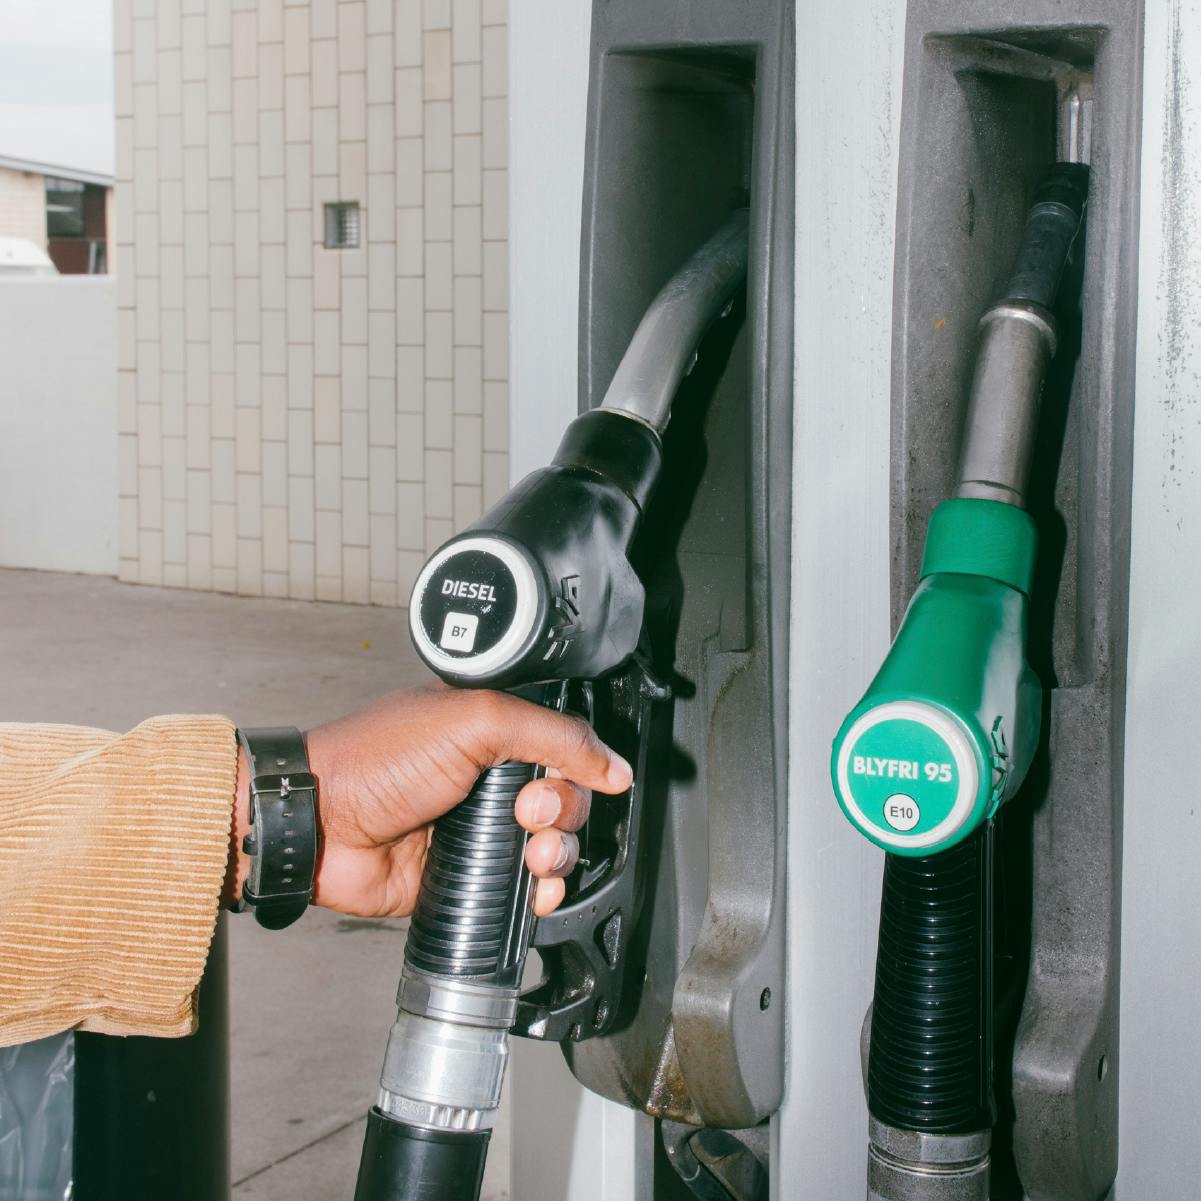 Un dipendente mentre fa rifornimento all’auto e riceve informazioni sule spese relative al carburante